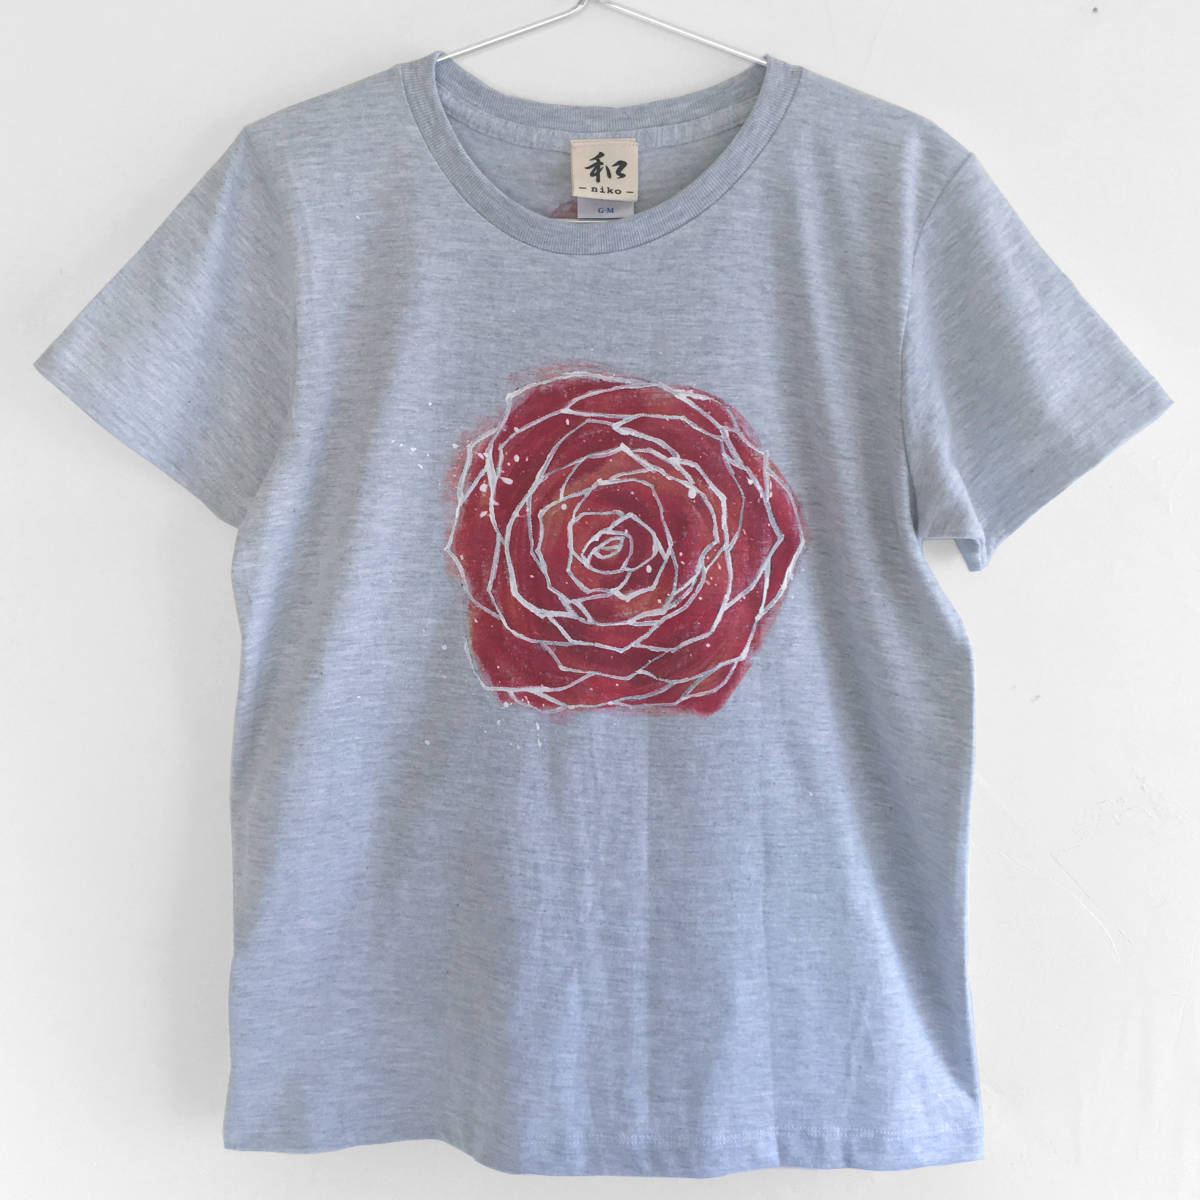 Женская футболка размера М. Футболка с рисунком розы и ручной росписью. Повседневная футболка с розой и акварелью., Размер М, круглая шея, узорчатый